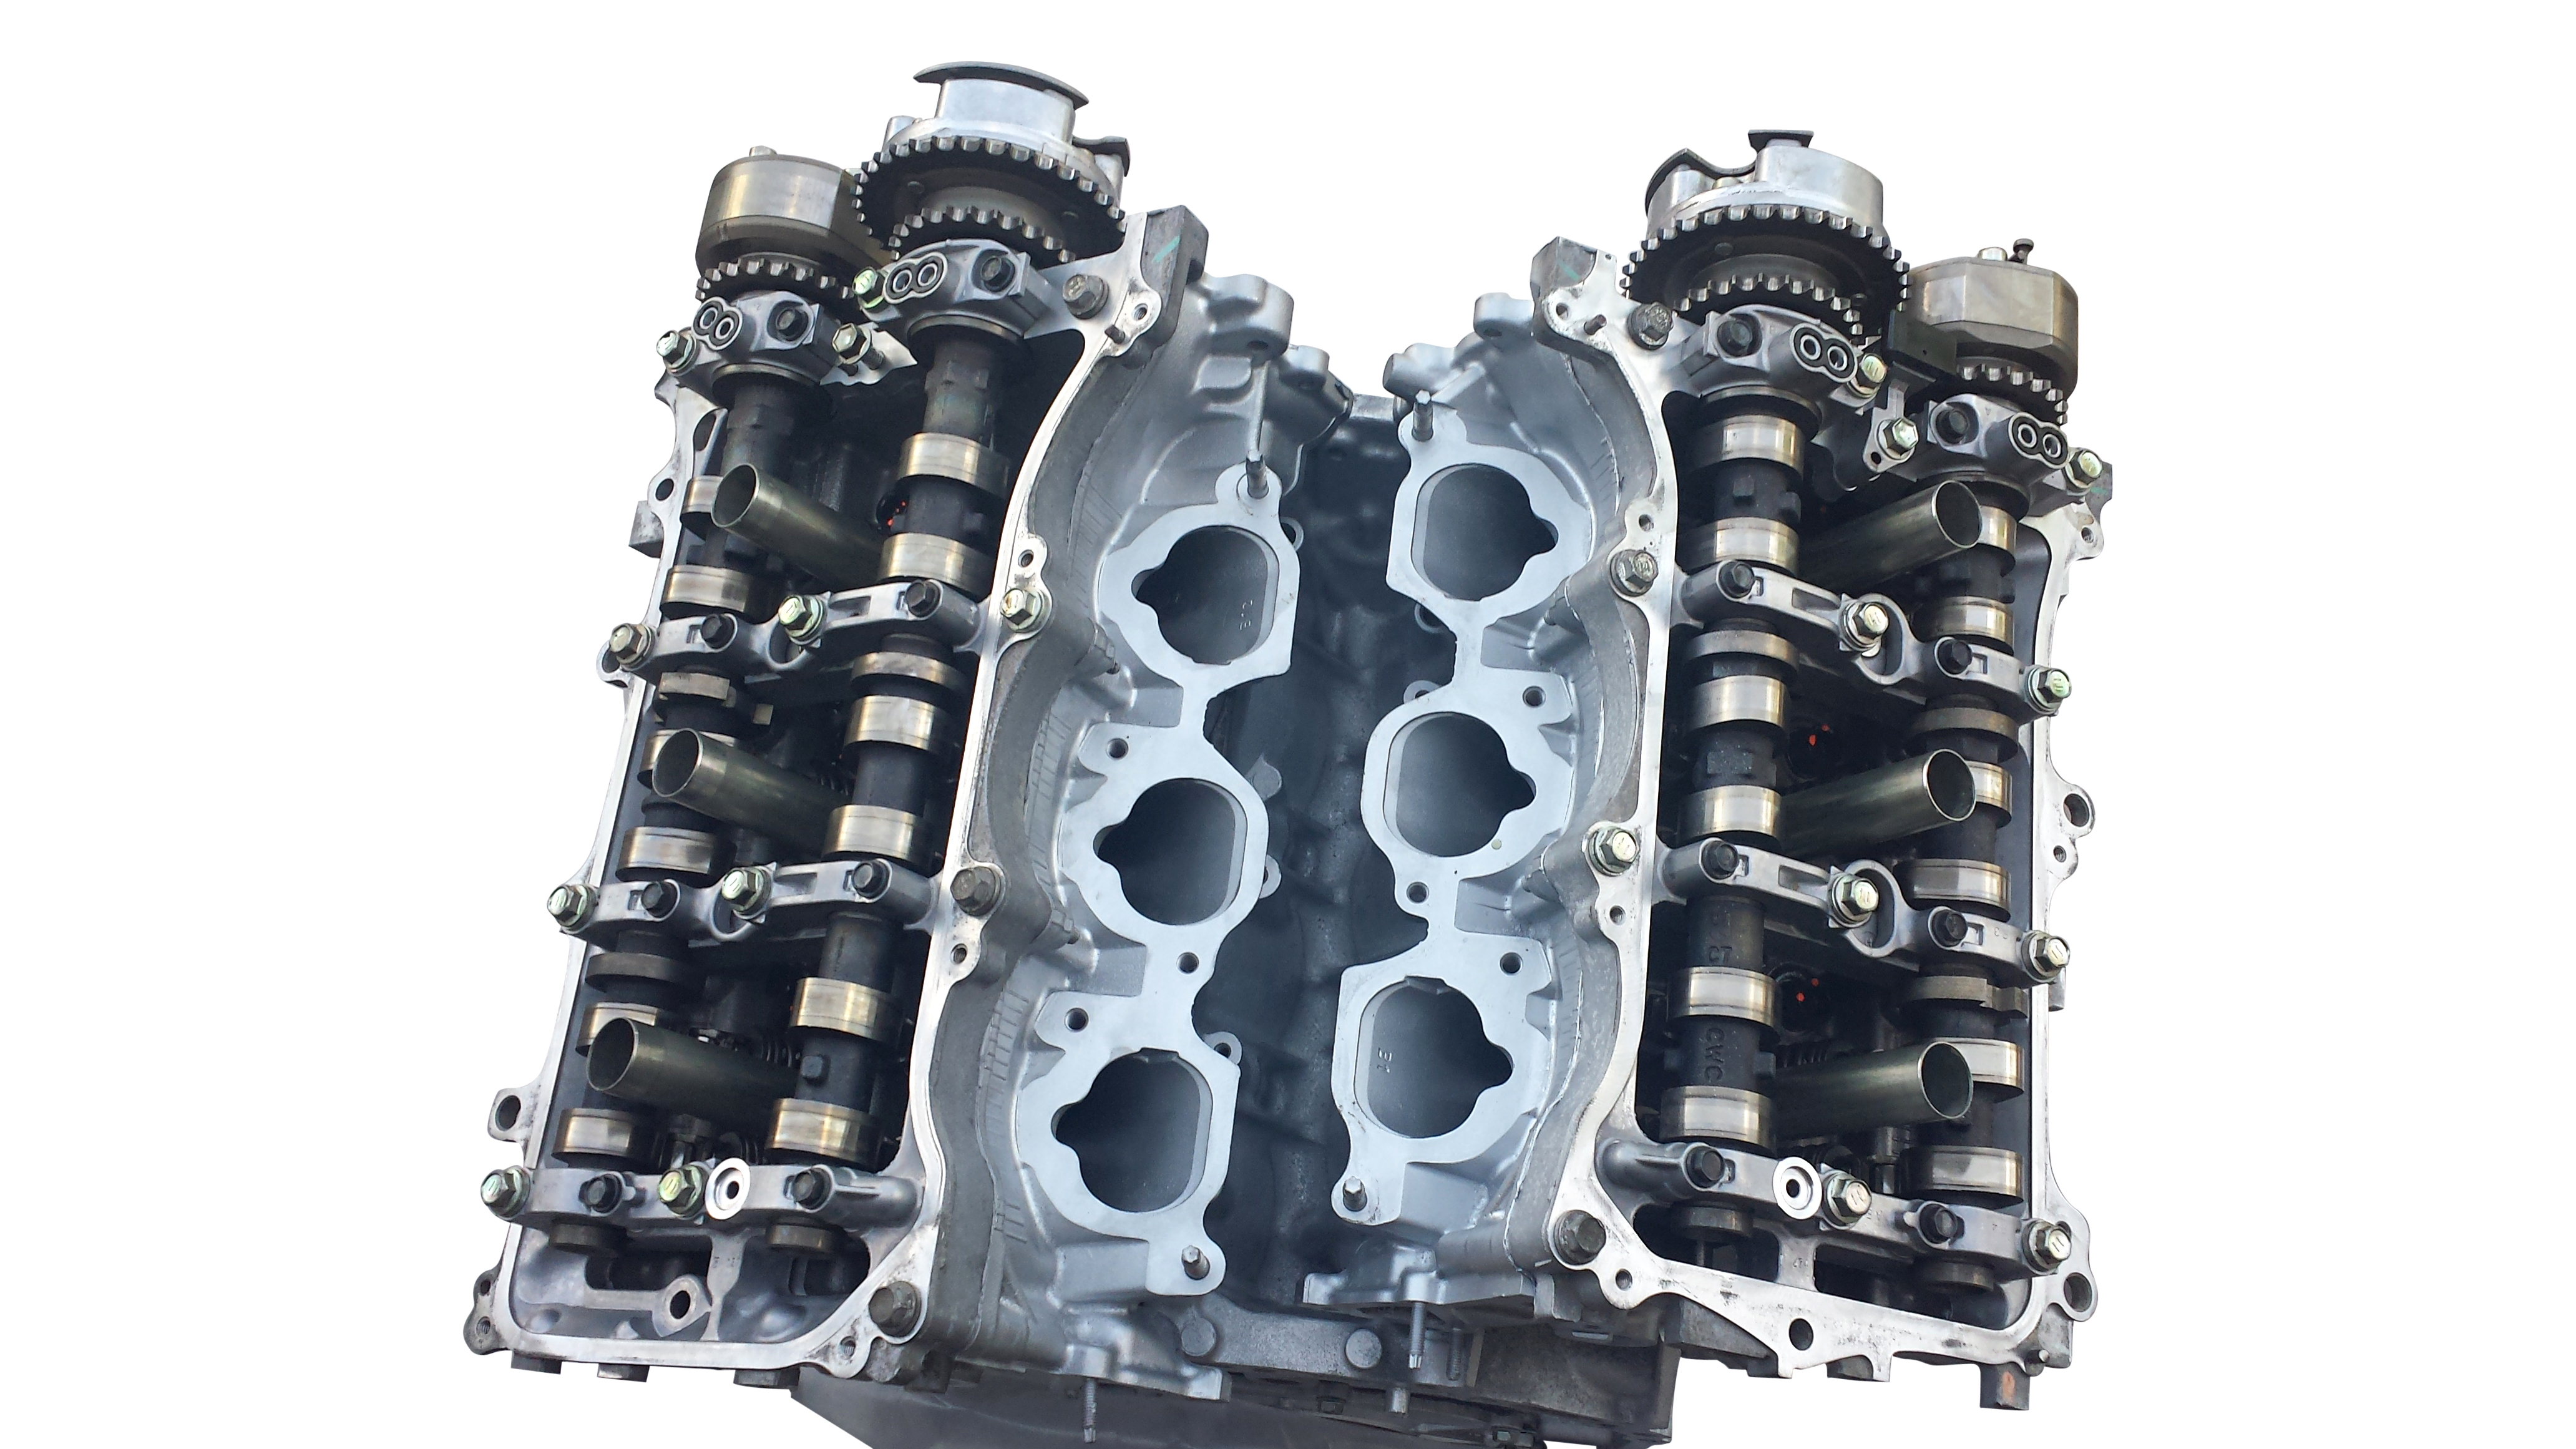 Toyota 2GR FE rebuilt Japanese engine for Avalon